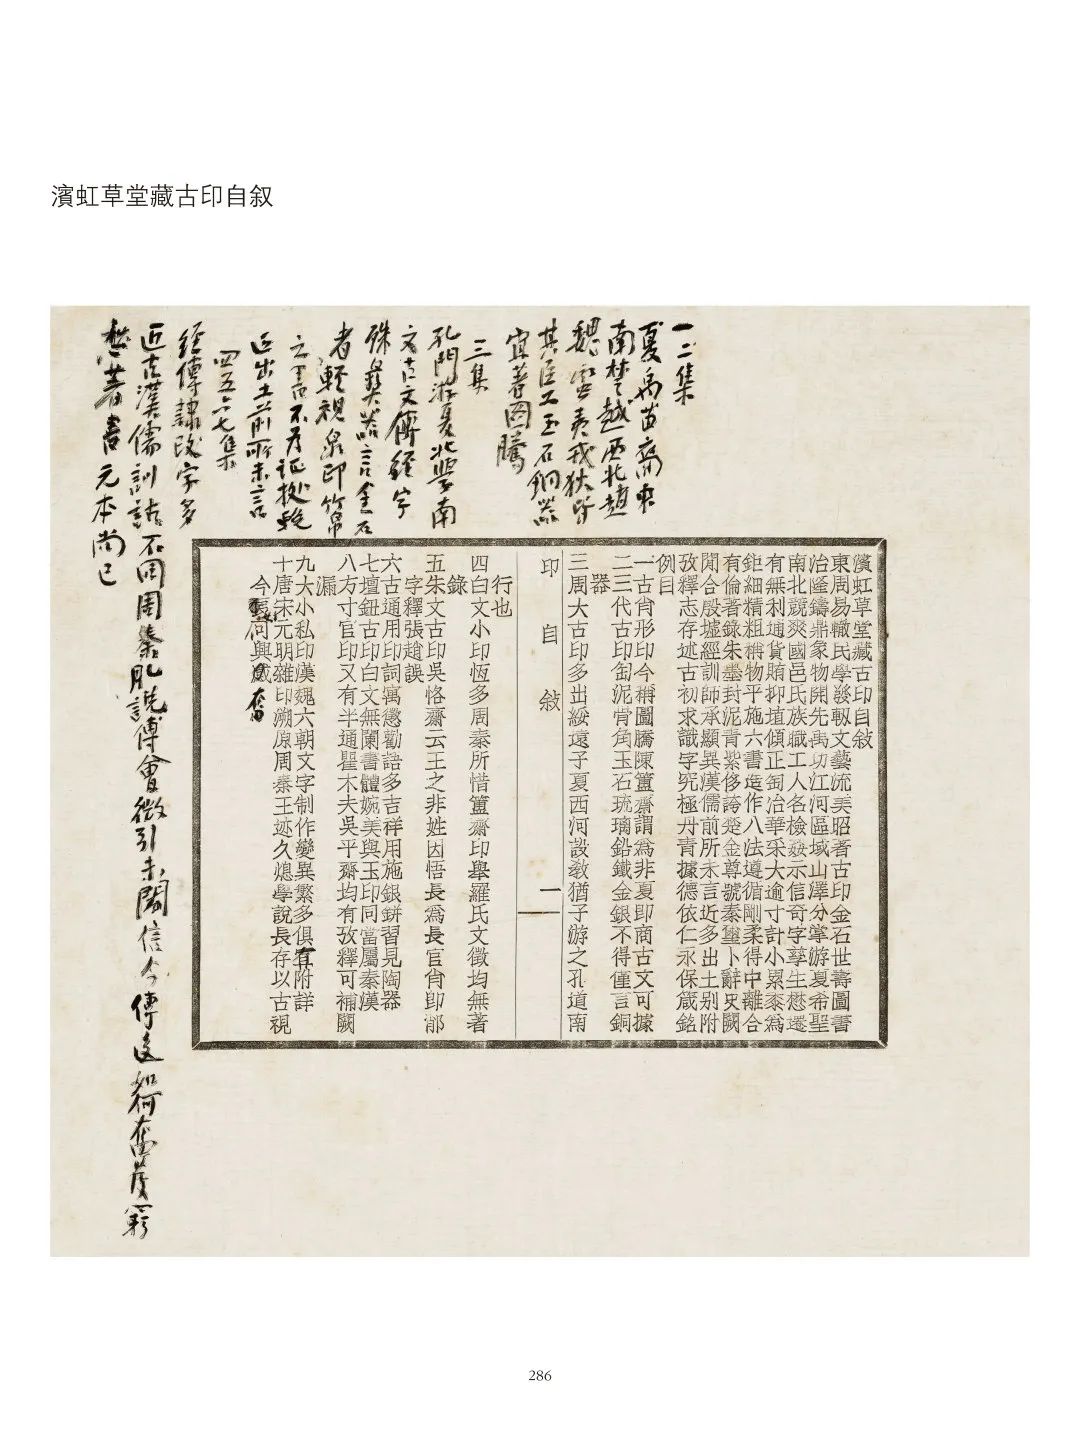 国内最具学术与艺术价值的玺印收藏集合体之一《古物影——黄宾虹古玺印收藏集萃》(图137)